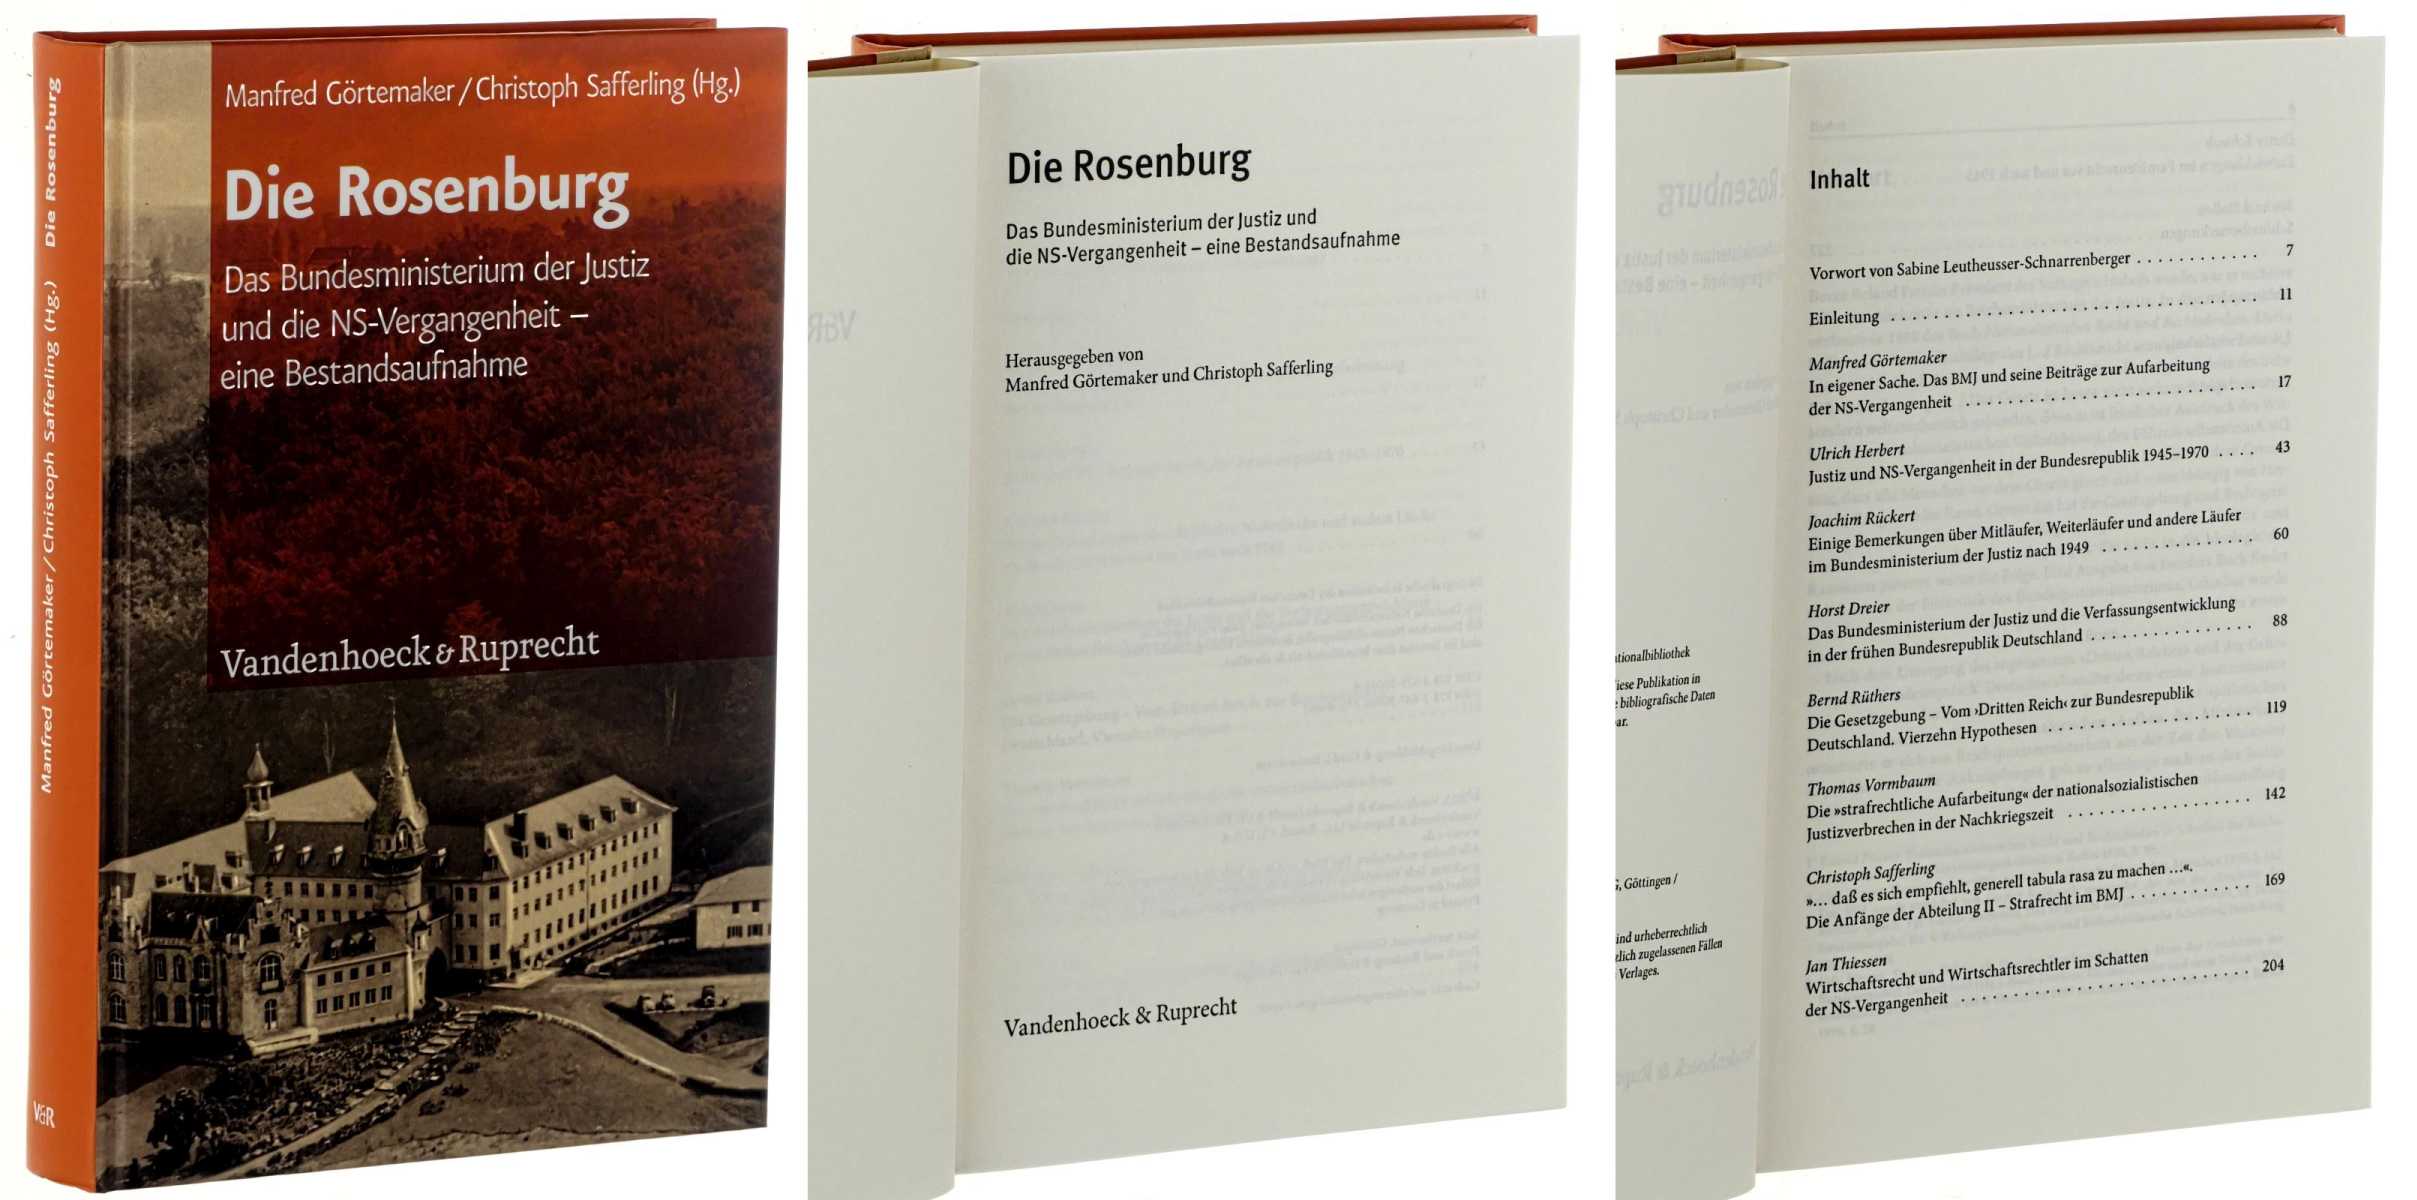 Görtemaker, Manfred/ Christoph Safferling (Hg.):  Die Rosenburg. Das Bundesministerium der Justiz und die NS-Vergangenheit - eine Bestandsaufnahme. 